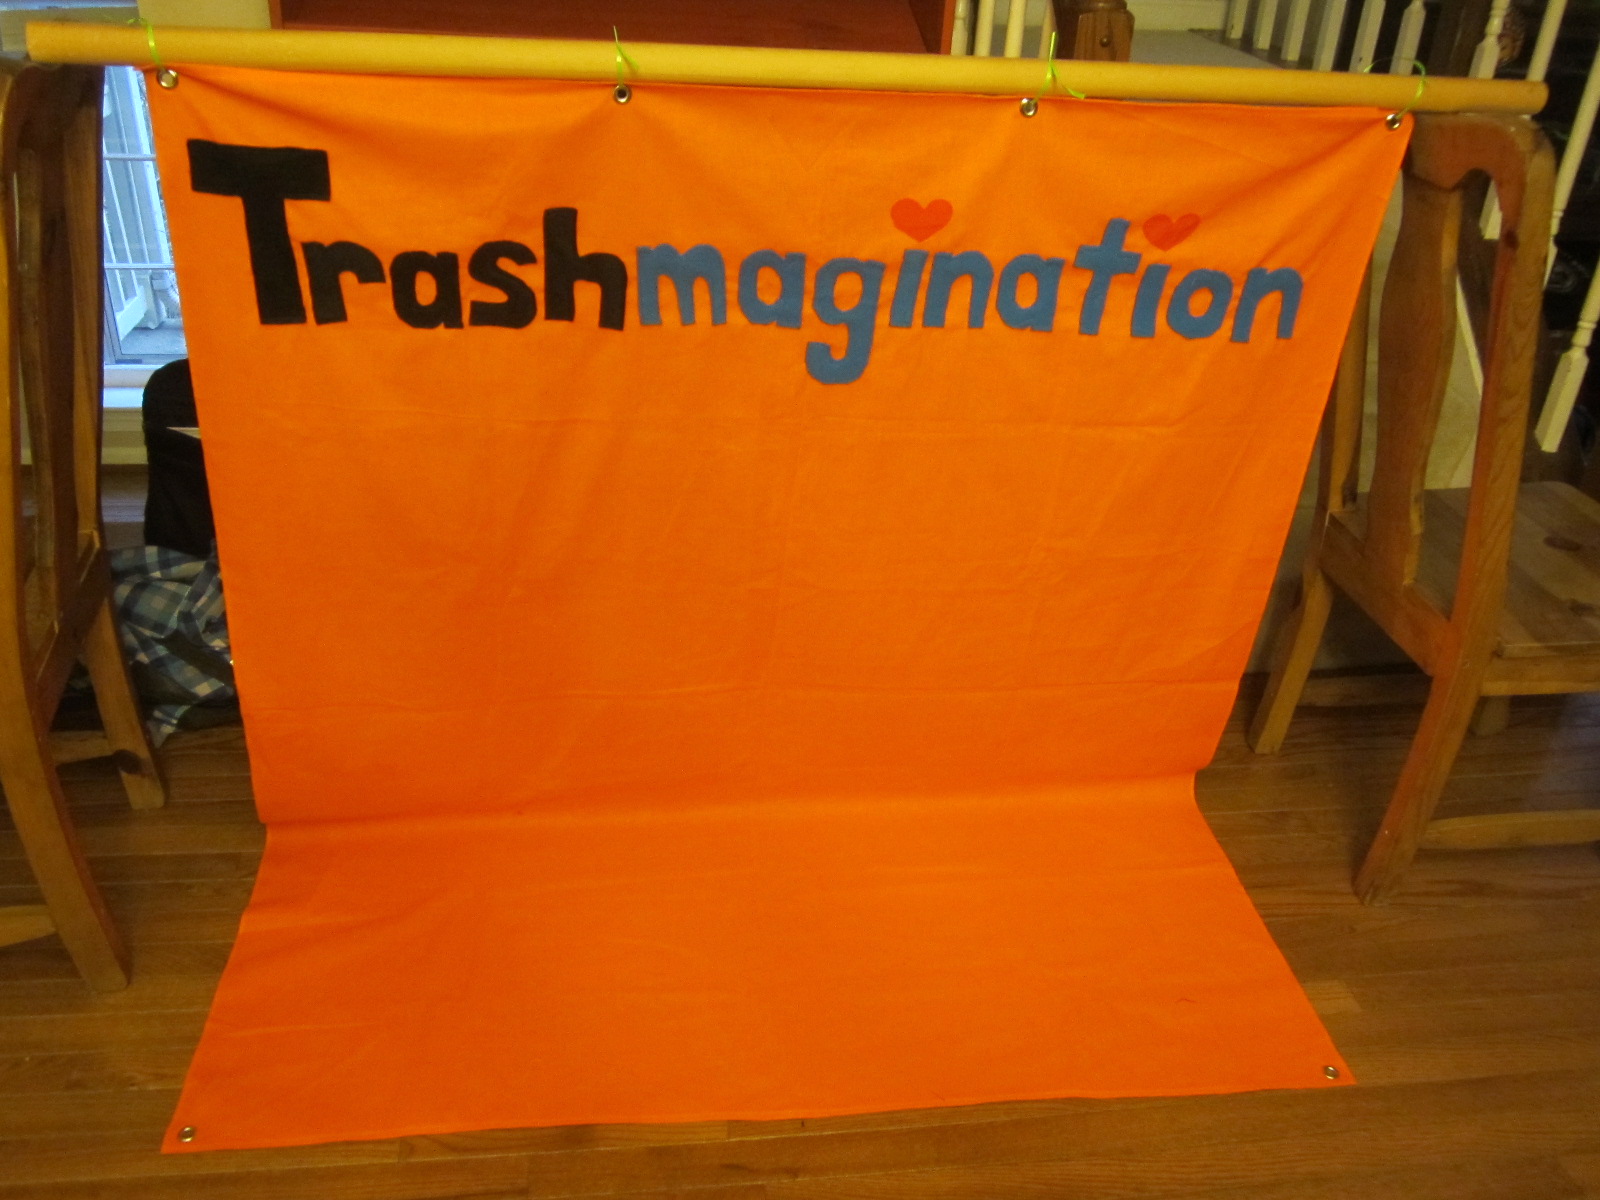 The Trashmagination Banner I sewed